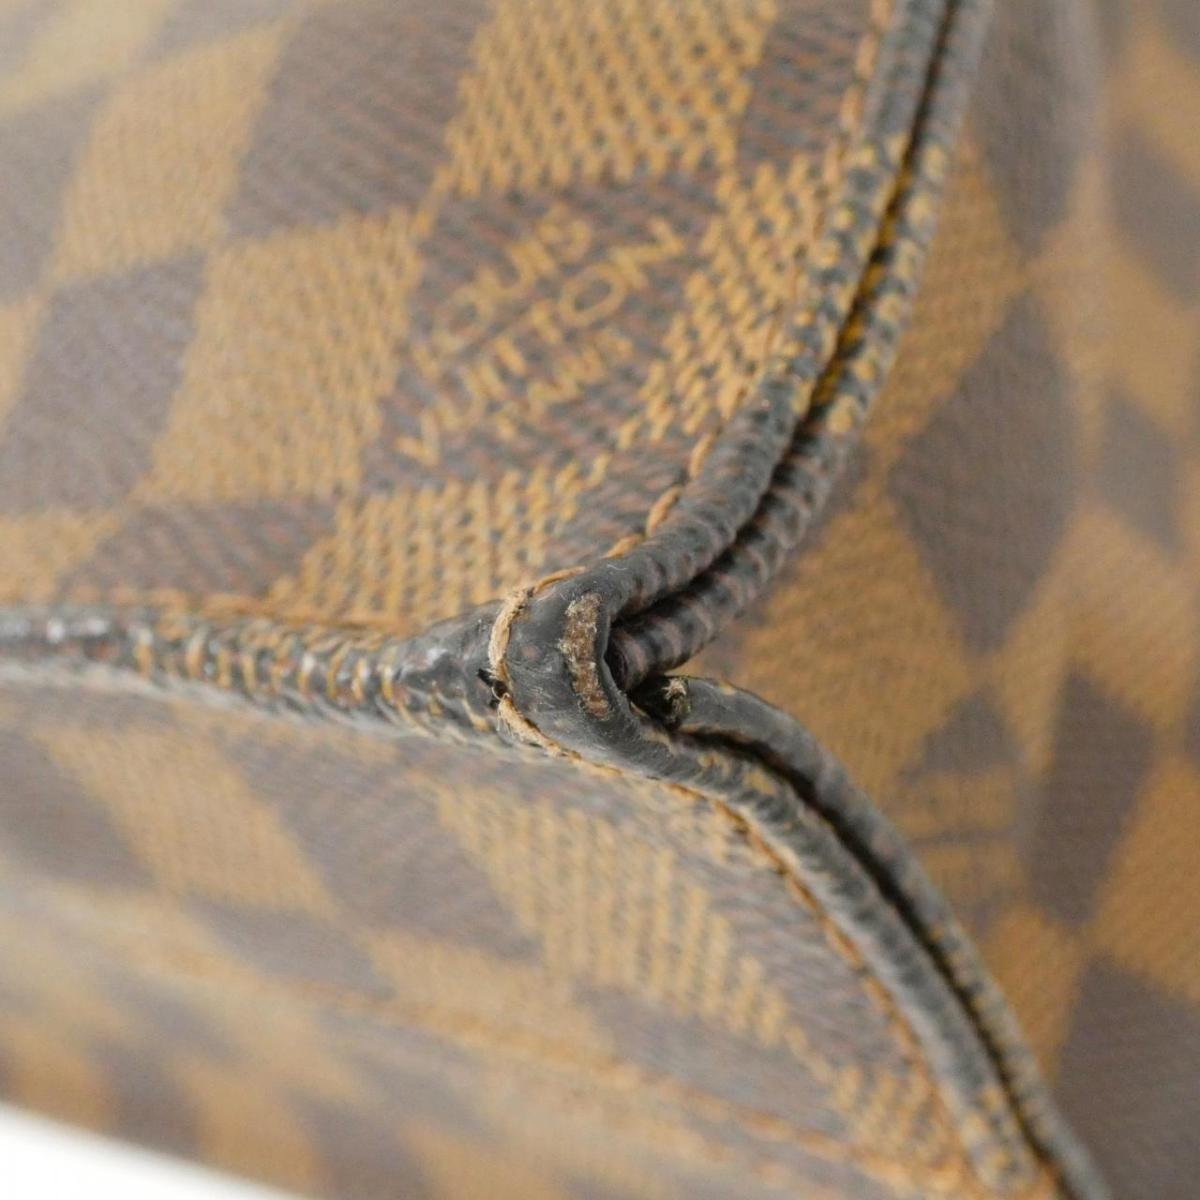 Louis Vuitton Damier Sakura N51140 Bag